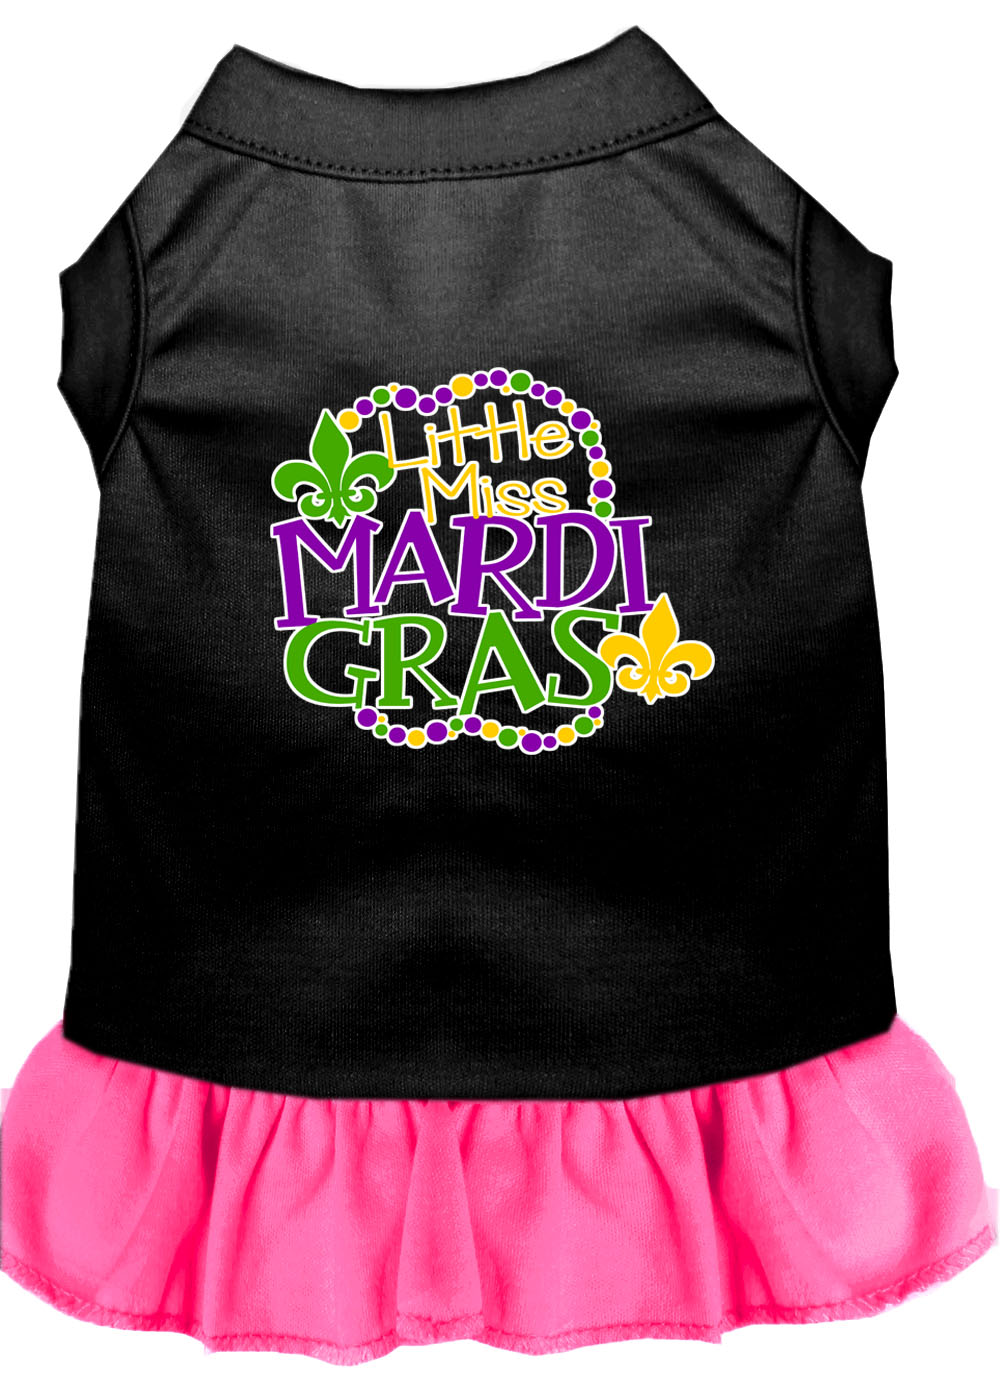 Miss Mardi Gras Screen Print Mardi Gras Dog Dress Black with Bright Pink Lg